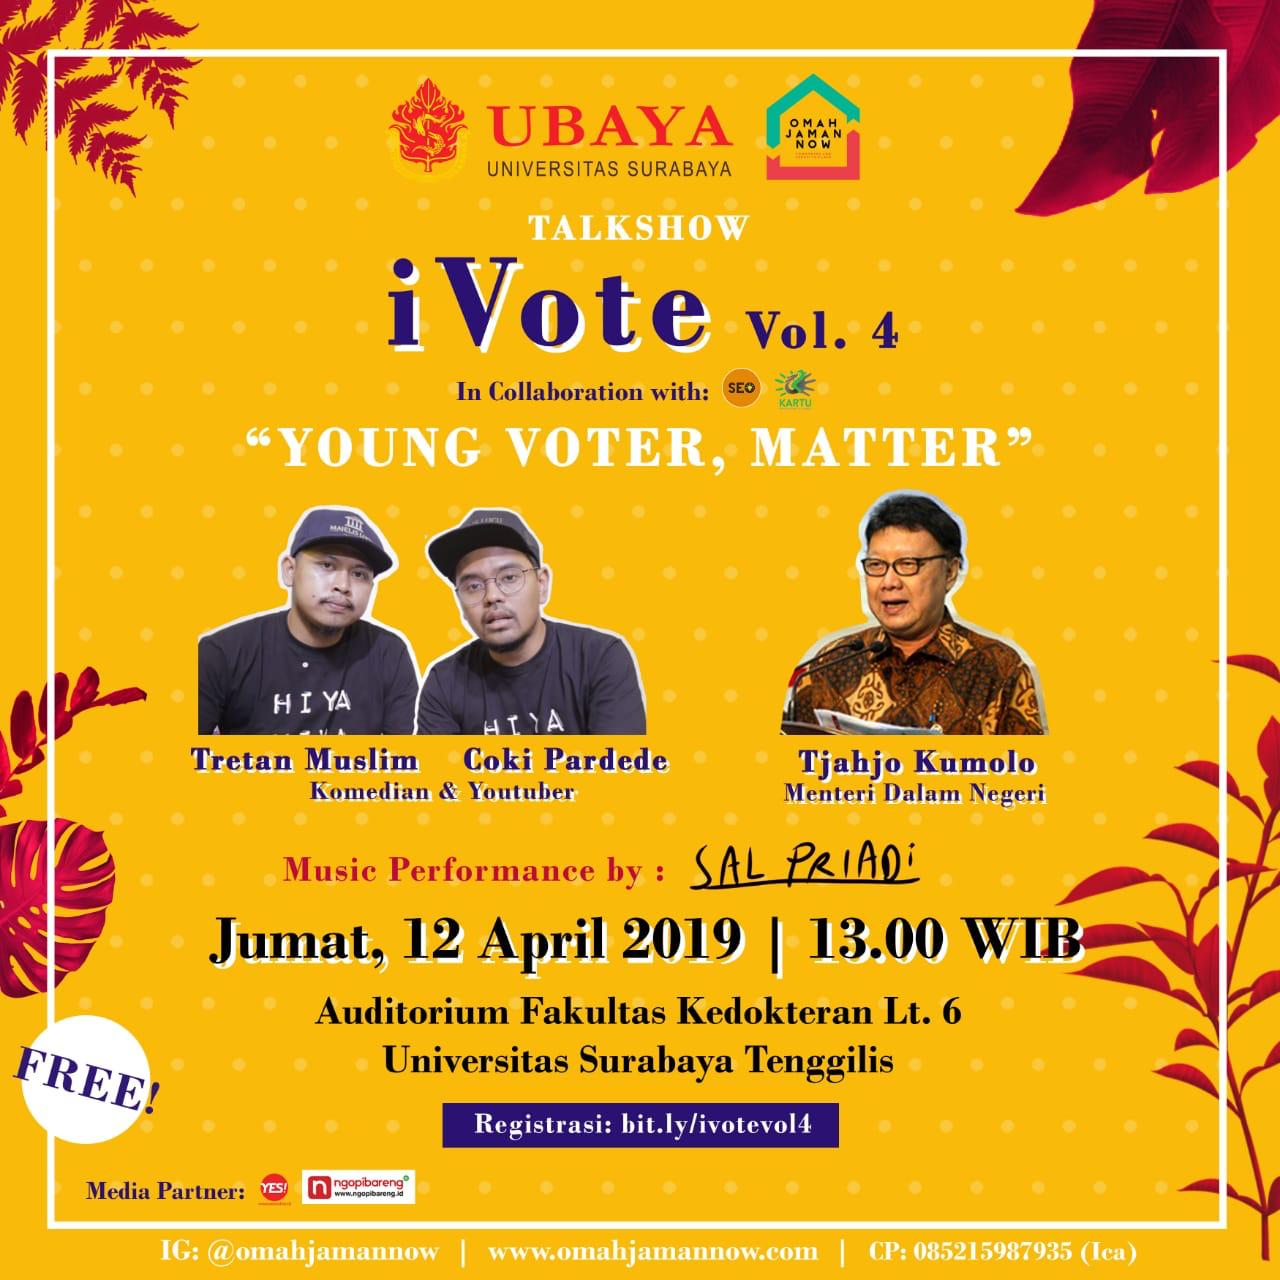 Talkshow iVote vol.4 digelar di Ubaya, Jumat 12 April 2019